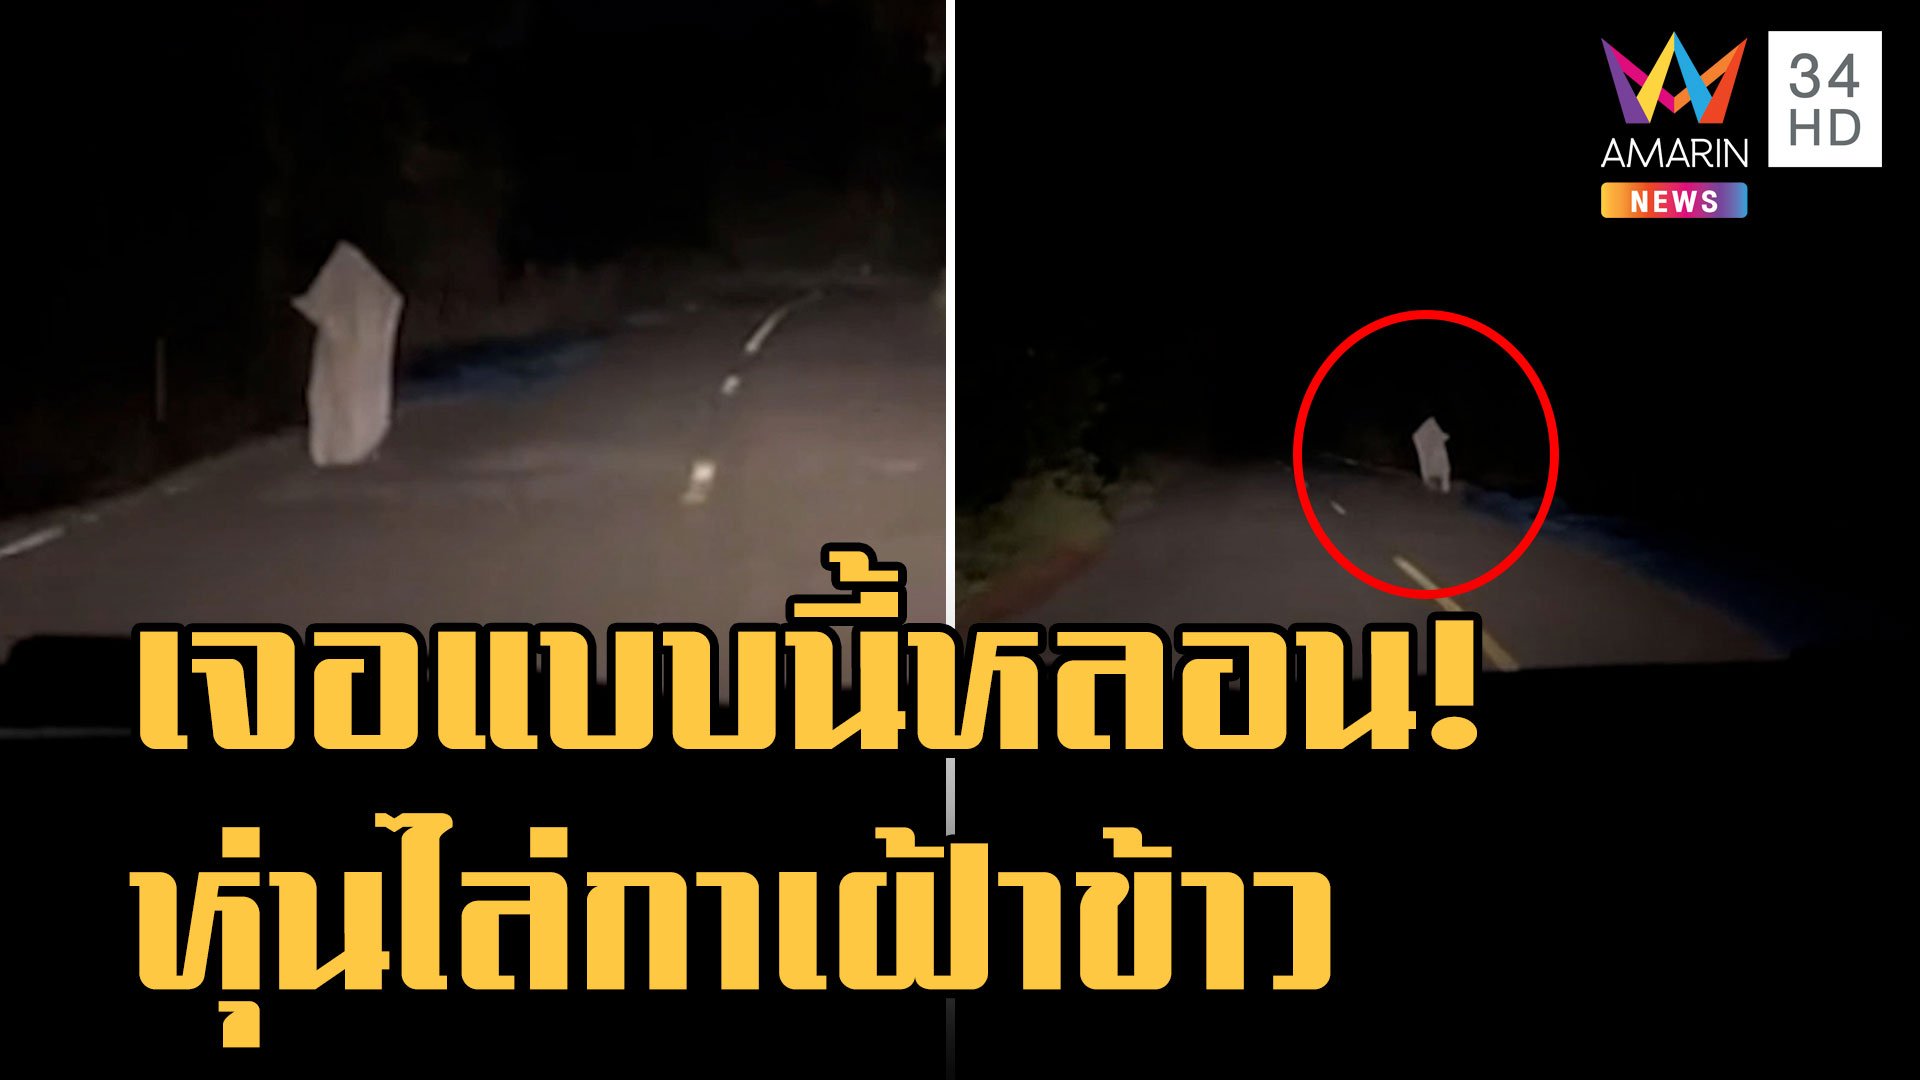 ชาวบ้านตากข้าวบนถนน แต่เจอแบบนี้ก็หลอนนะ | ข่าวอรุณอมรินทร์ | 8 พ.ย. 65 | AMARIN TVHD34